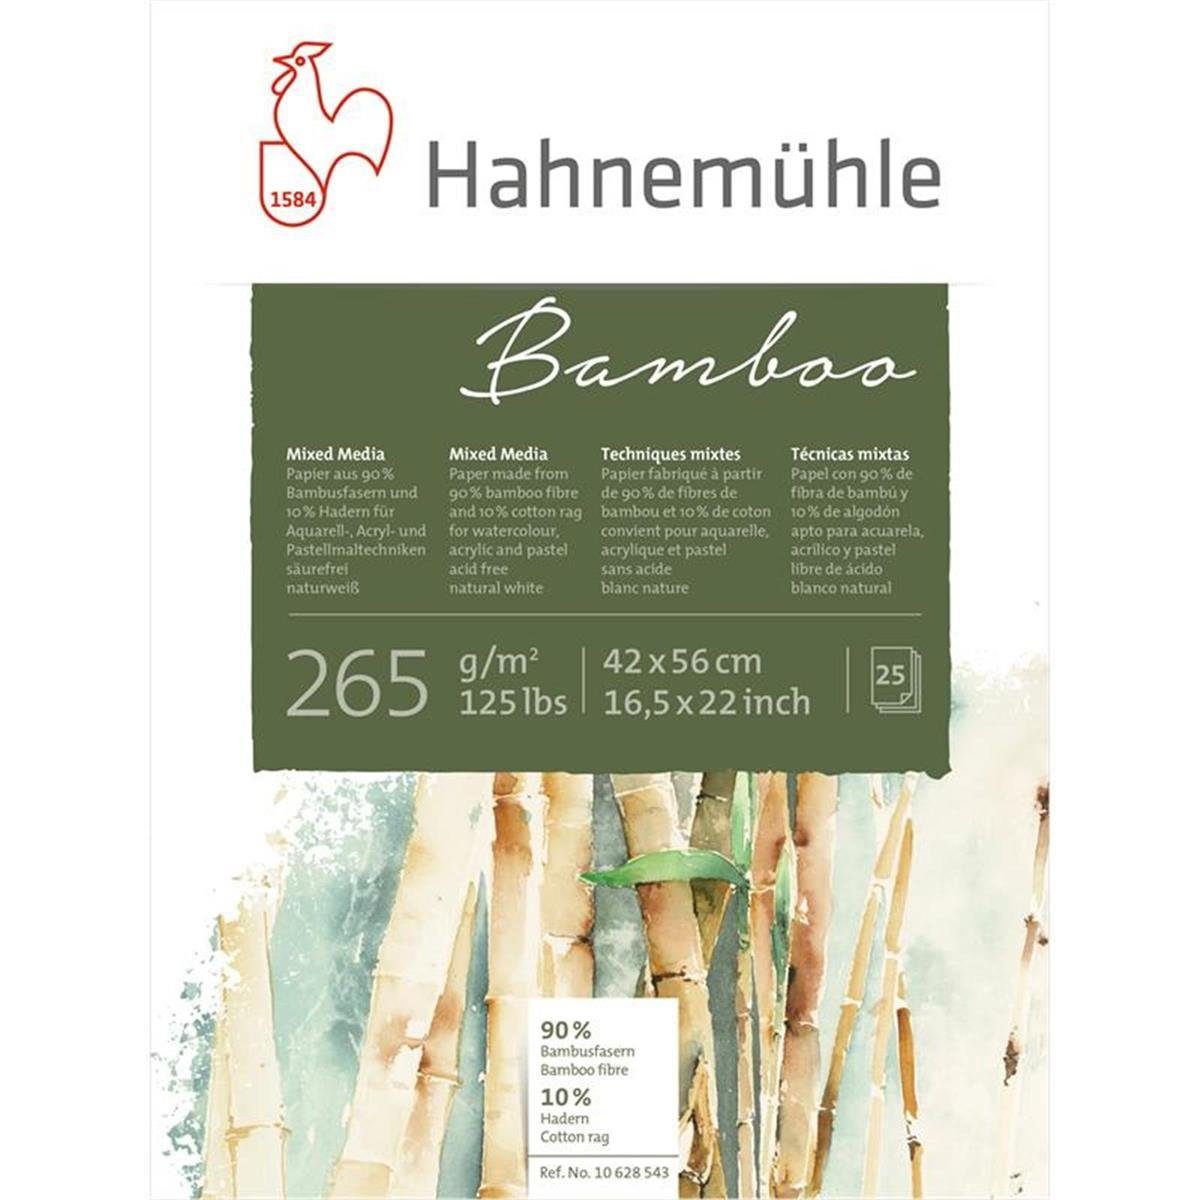 cm - 56 Bamboo x Zeichenkohle 265 Blatt g/m² Media 42 Hahnemühle Mixed - 25 -